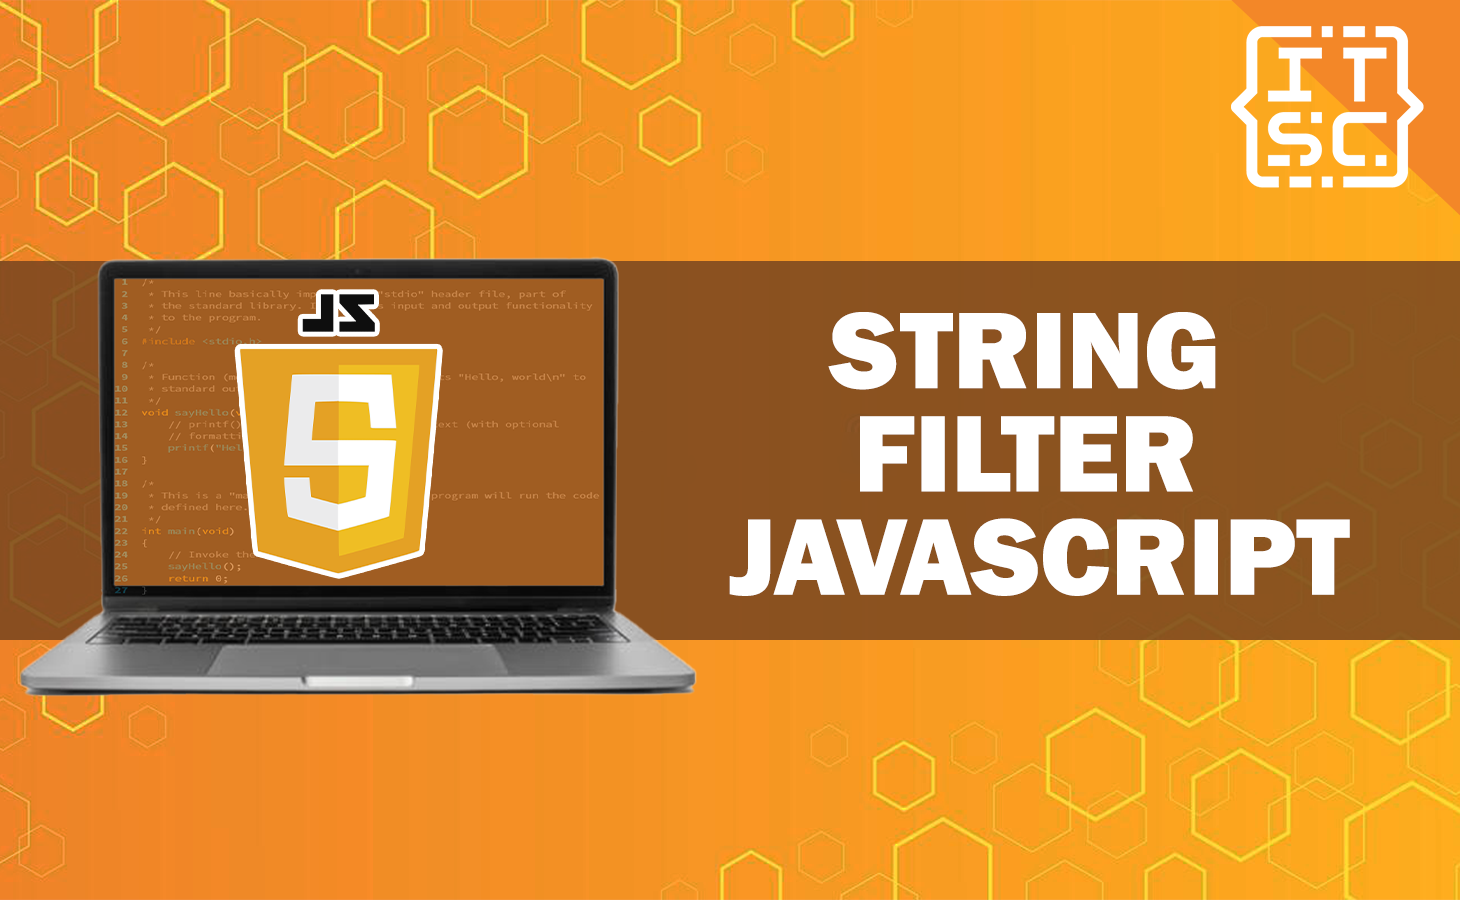 String Filter JavaScript